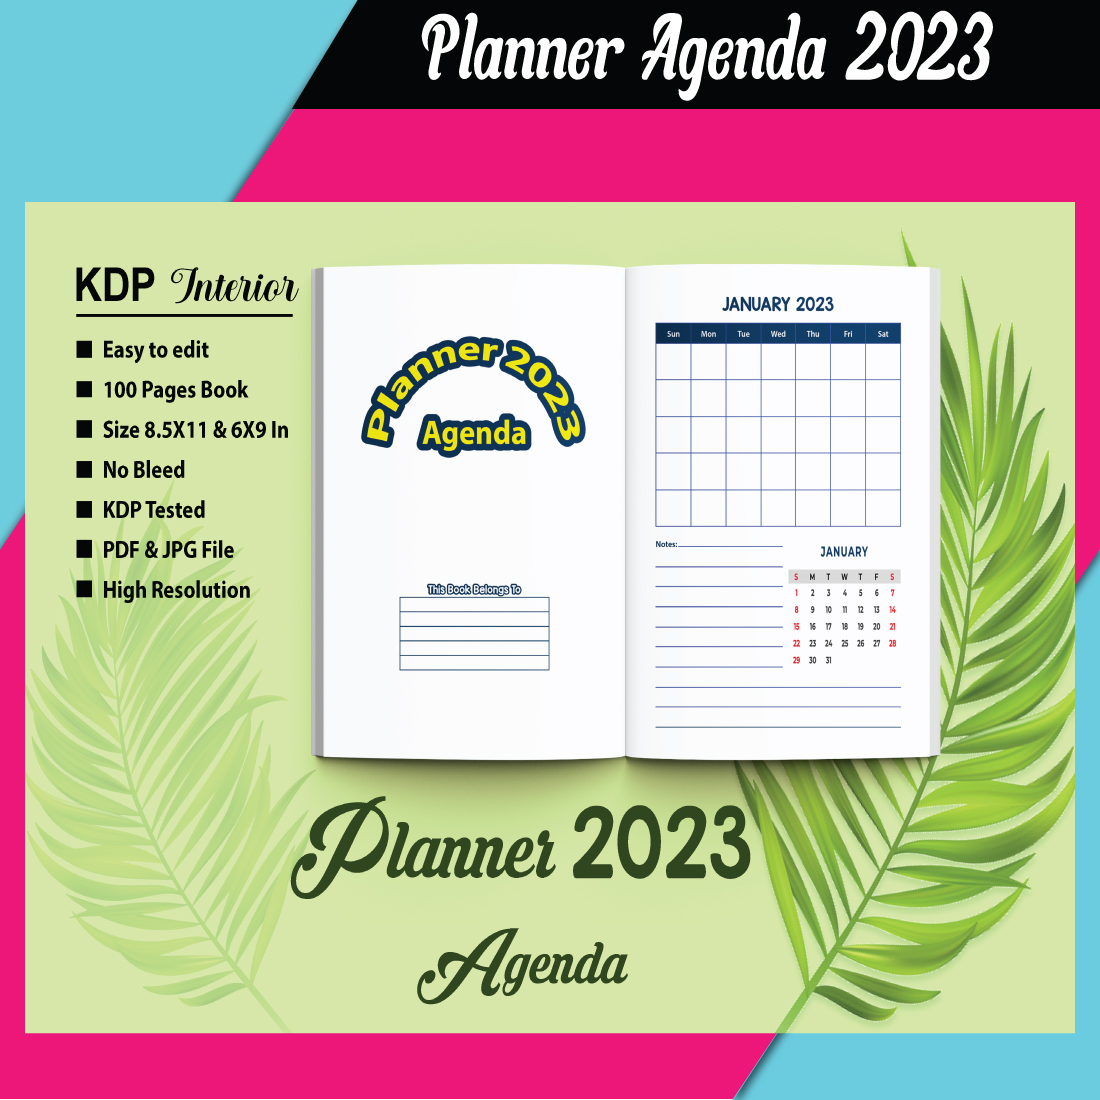 L'agenda 2023 : The Complete Planner - PDF